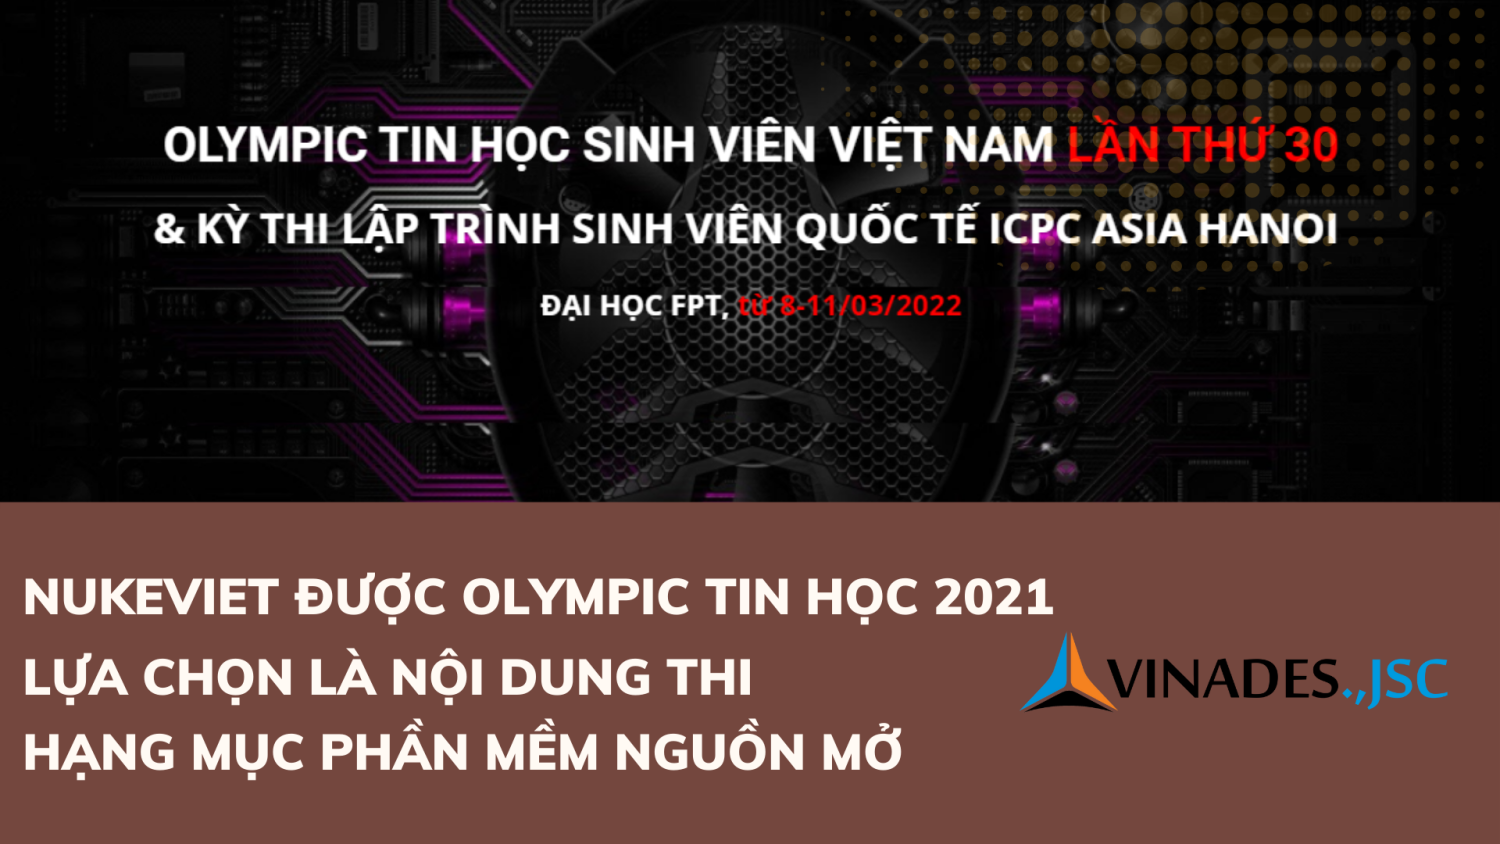 NukeViet tiếp tục được Olympic tin học 2021 lựa chọn là nội dung thi - Hạng mục Phần mềm nguồn mở